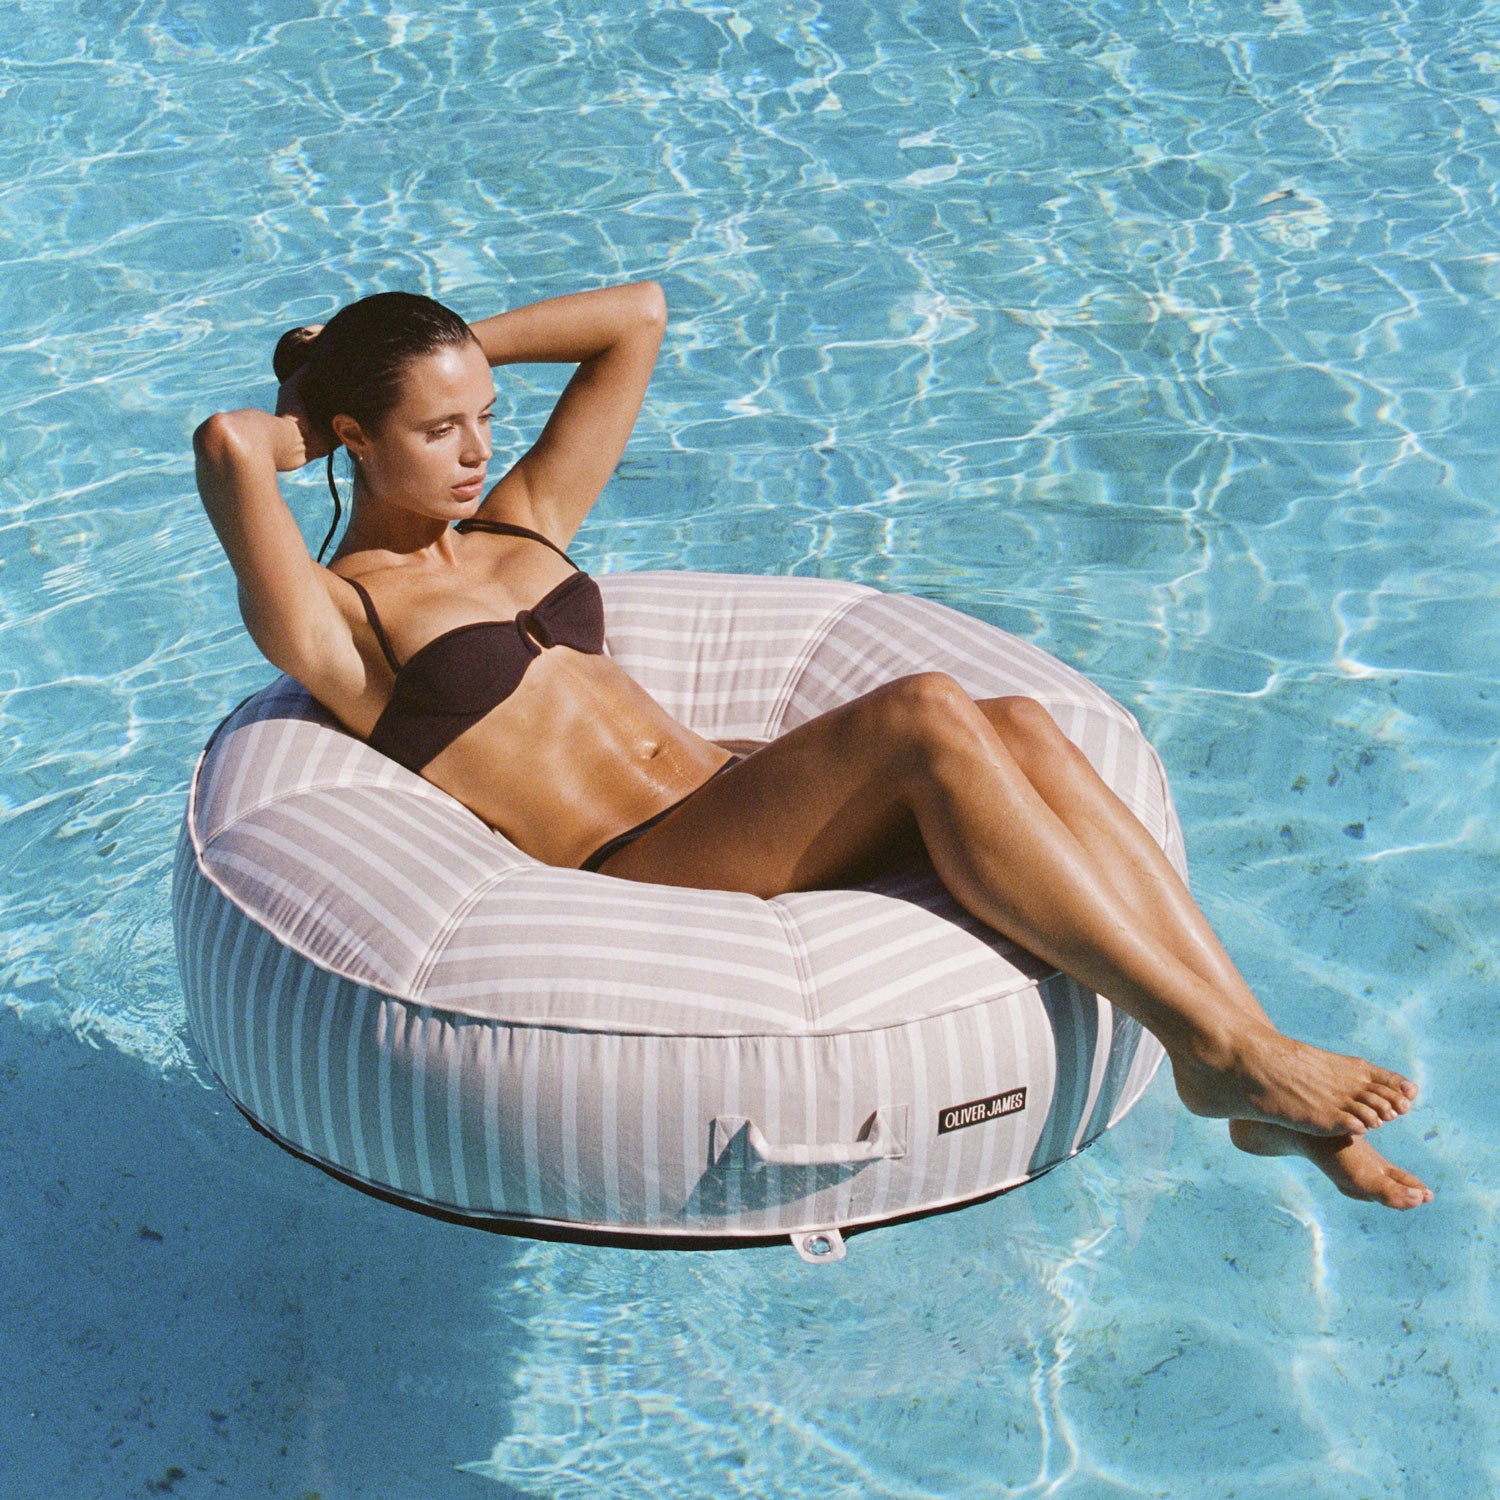 Une femme sur un flotteur de piscine rayé blanc et beige Bague flottant dans une piscine.